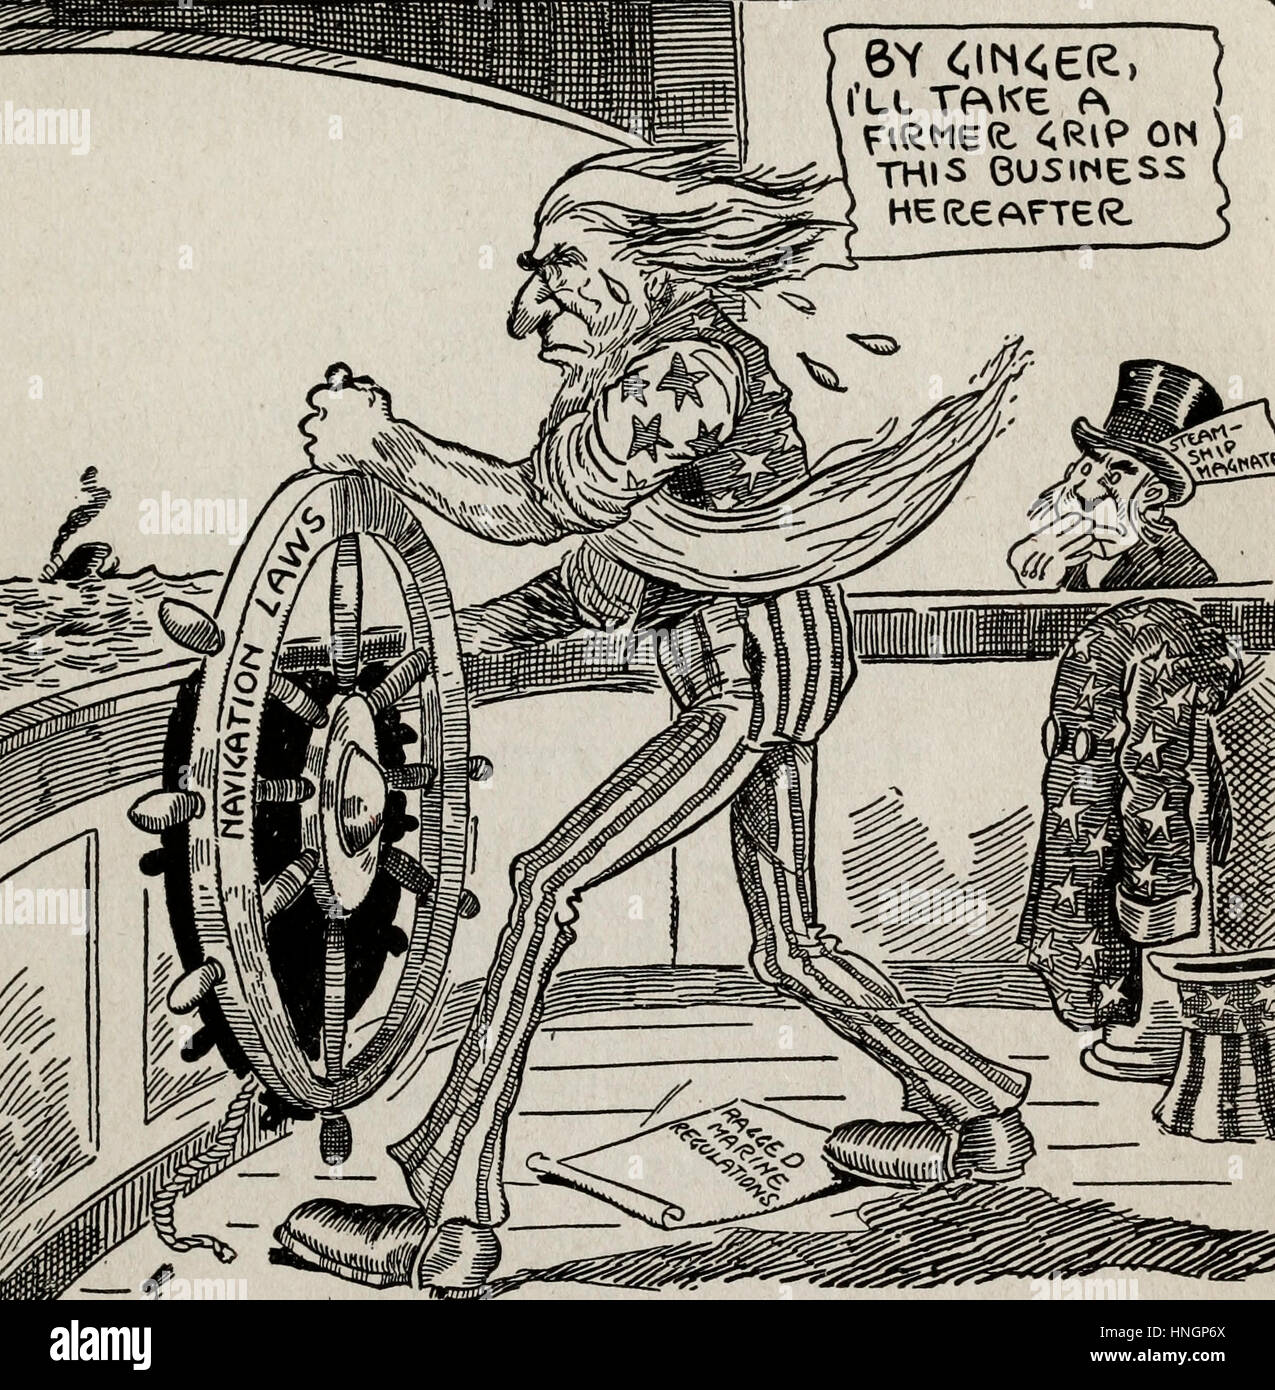 Le temps d'obtenir occupé - caricature politique montrant l'Oncle Sam en prenant une prise plus ferme sur le droit de navigation après la catastrophe du Titanic Banque D'Images